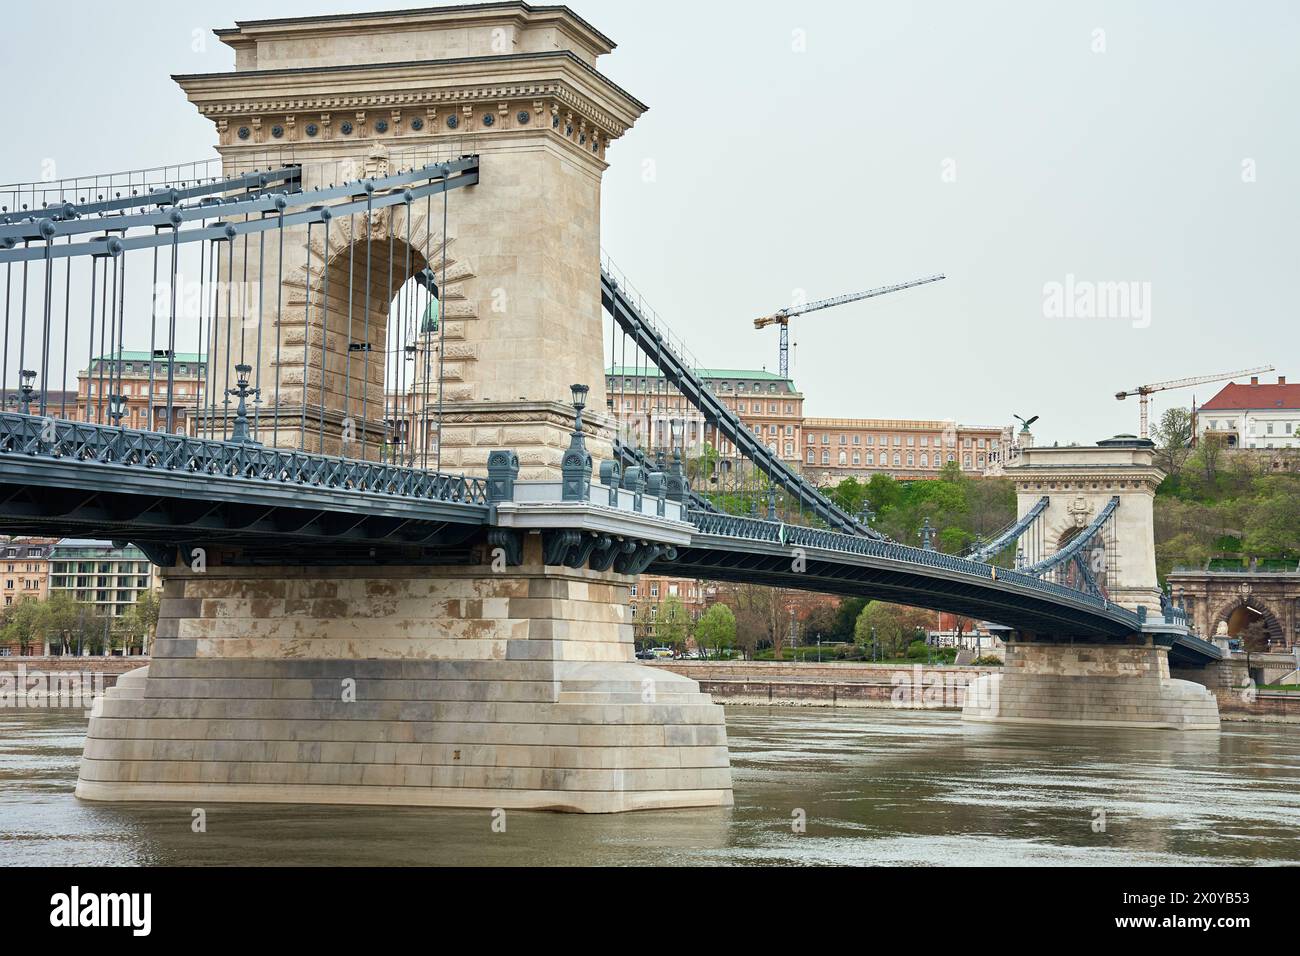 Vista panoramica sullo skyline di Budapest con il Ponte delle catene lungo il Danubio. Architettura della capitale ungherese con edifici storici e famo Foto Stock